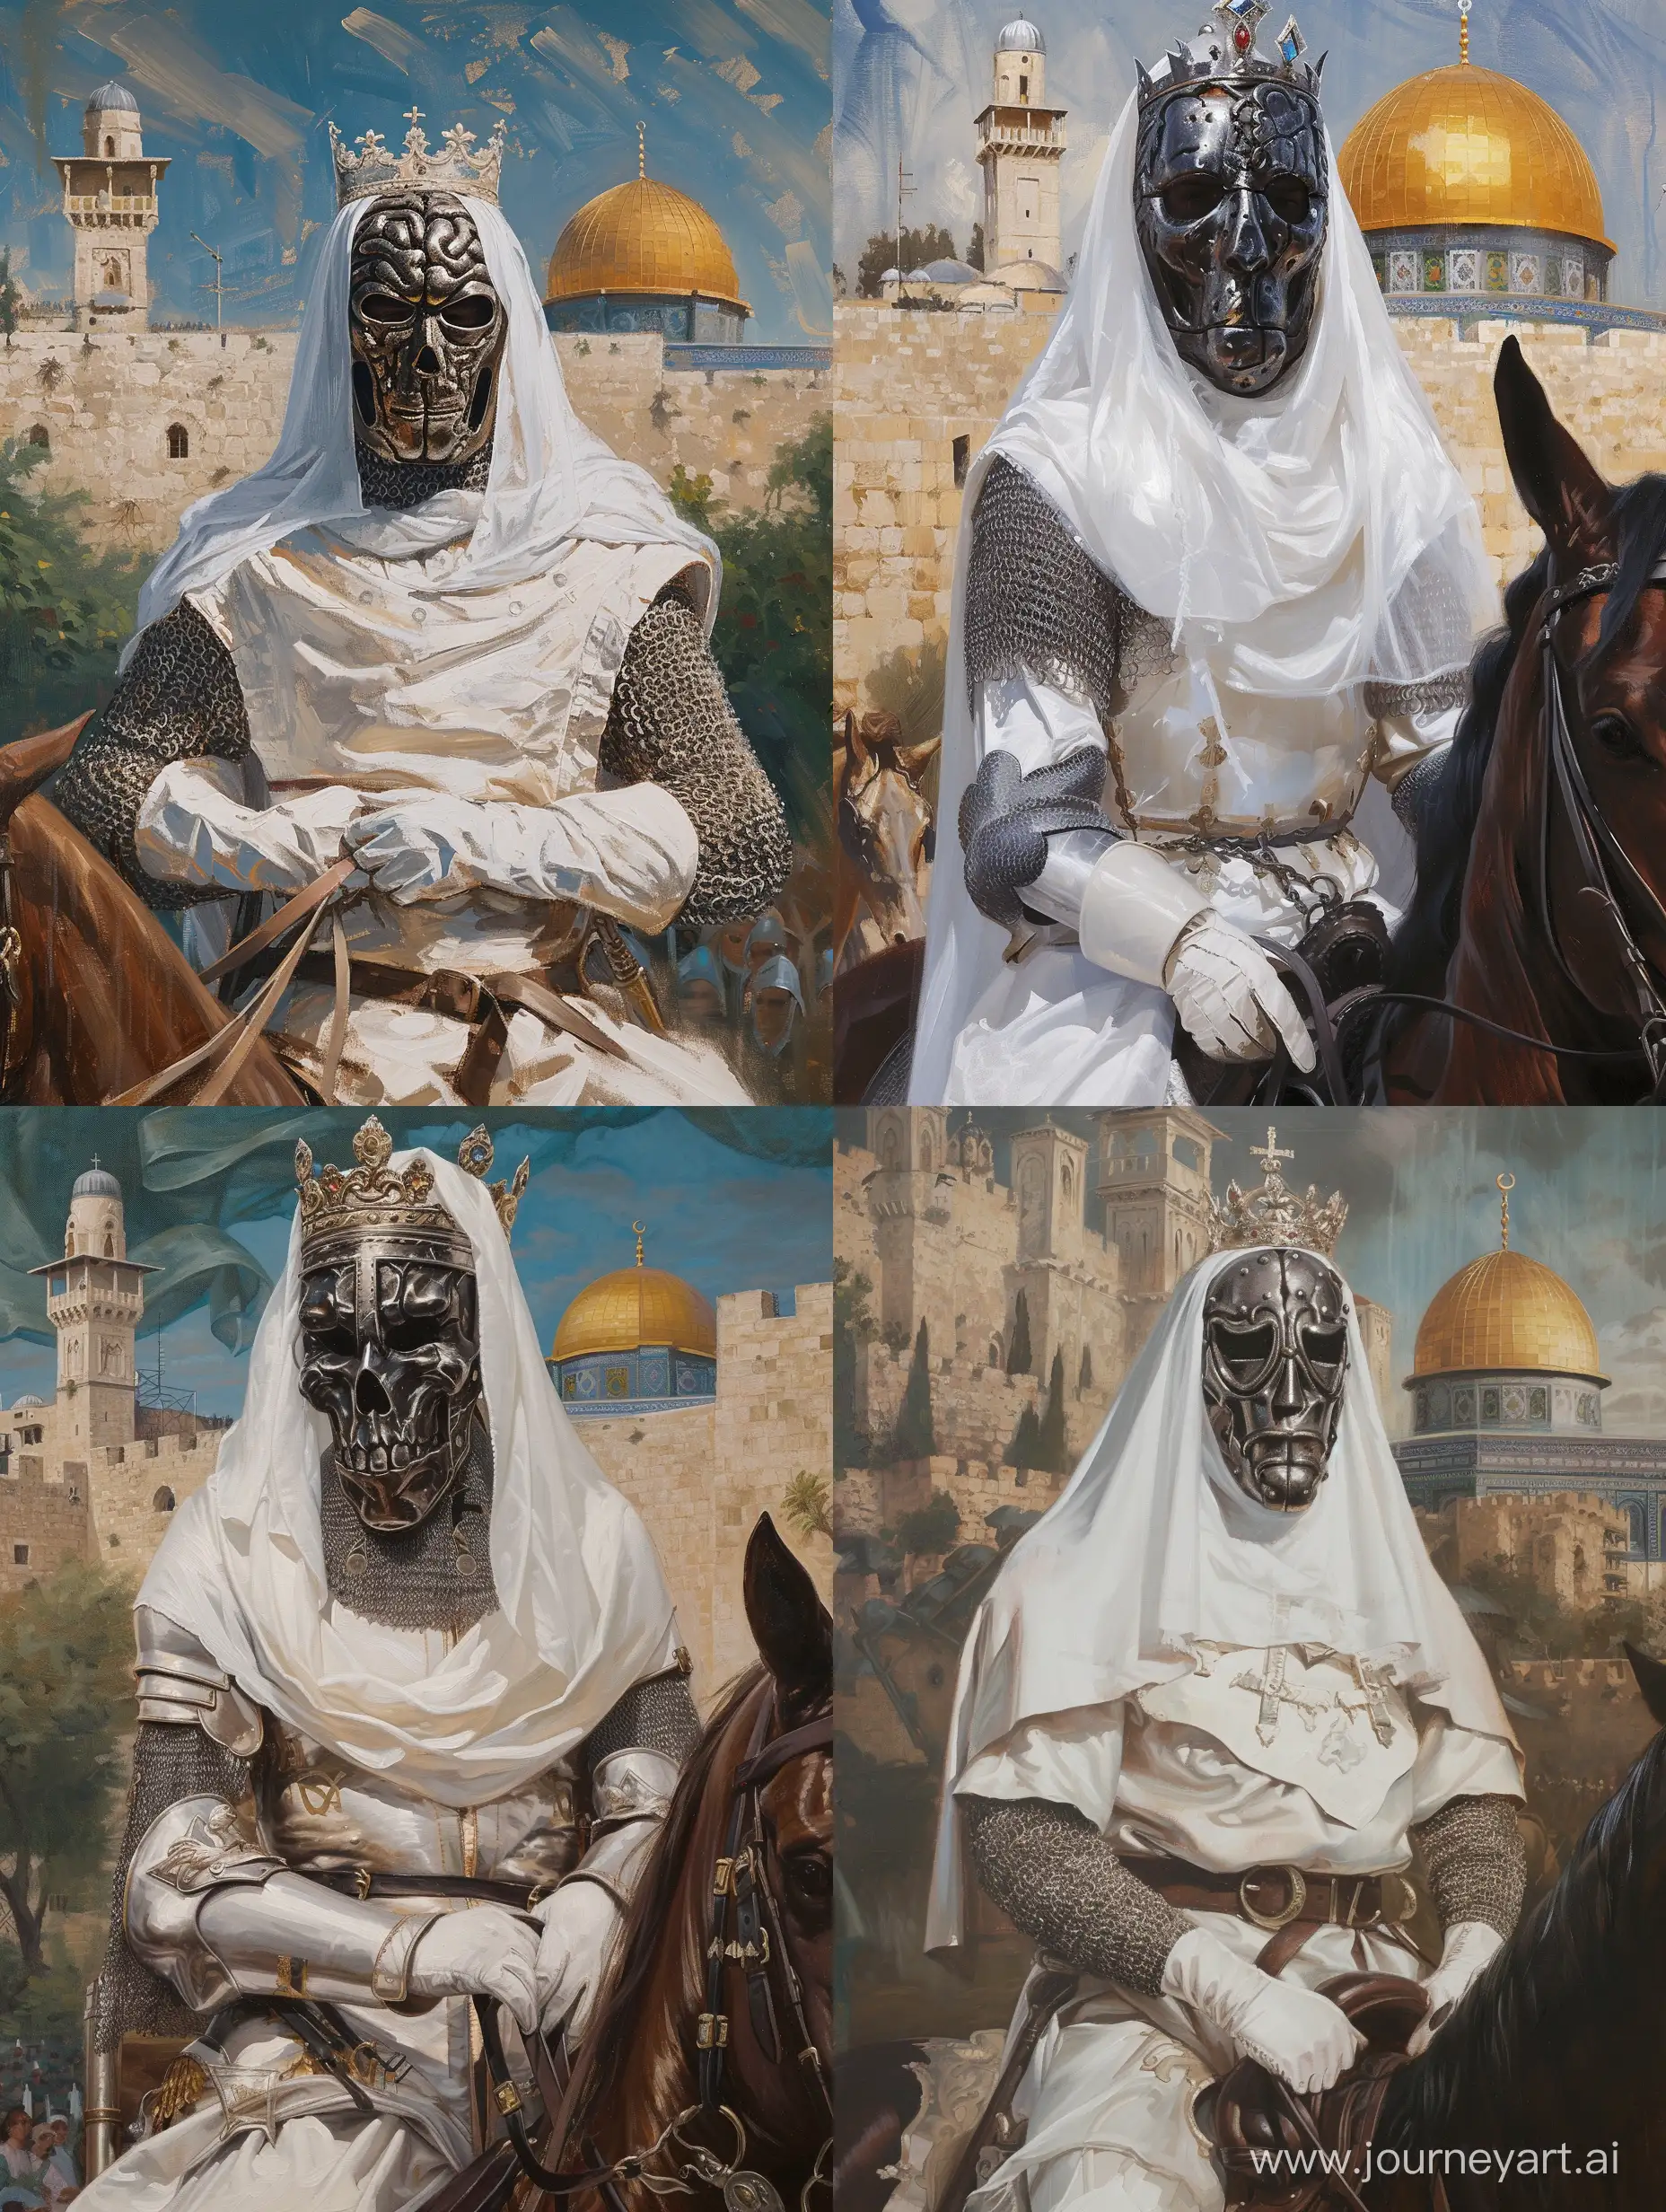 King-Baldwin-IV-of-Jerusalem-in-Iron-Mask-on-Horseback